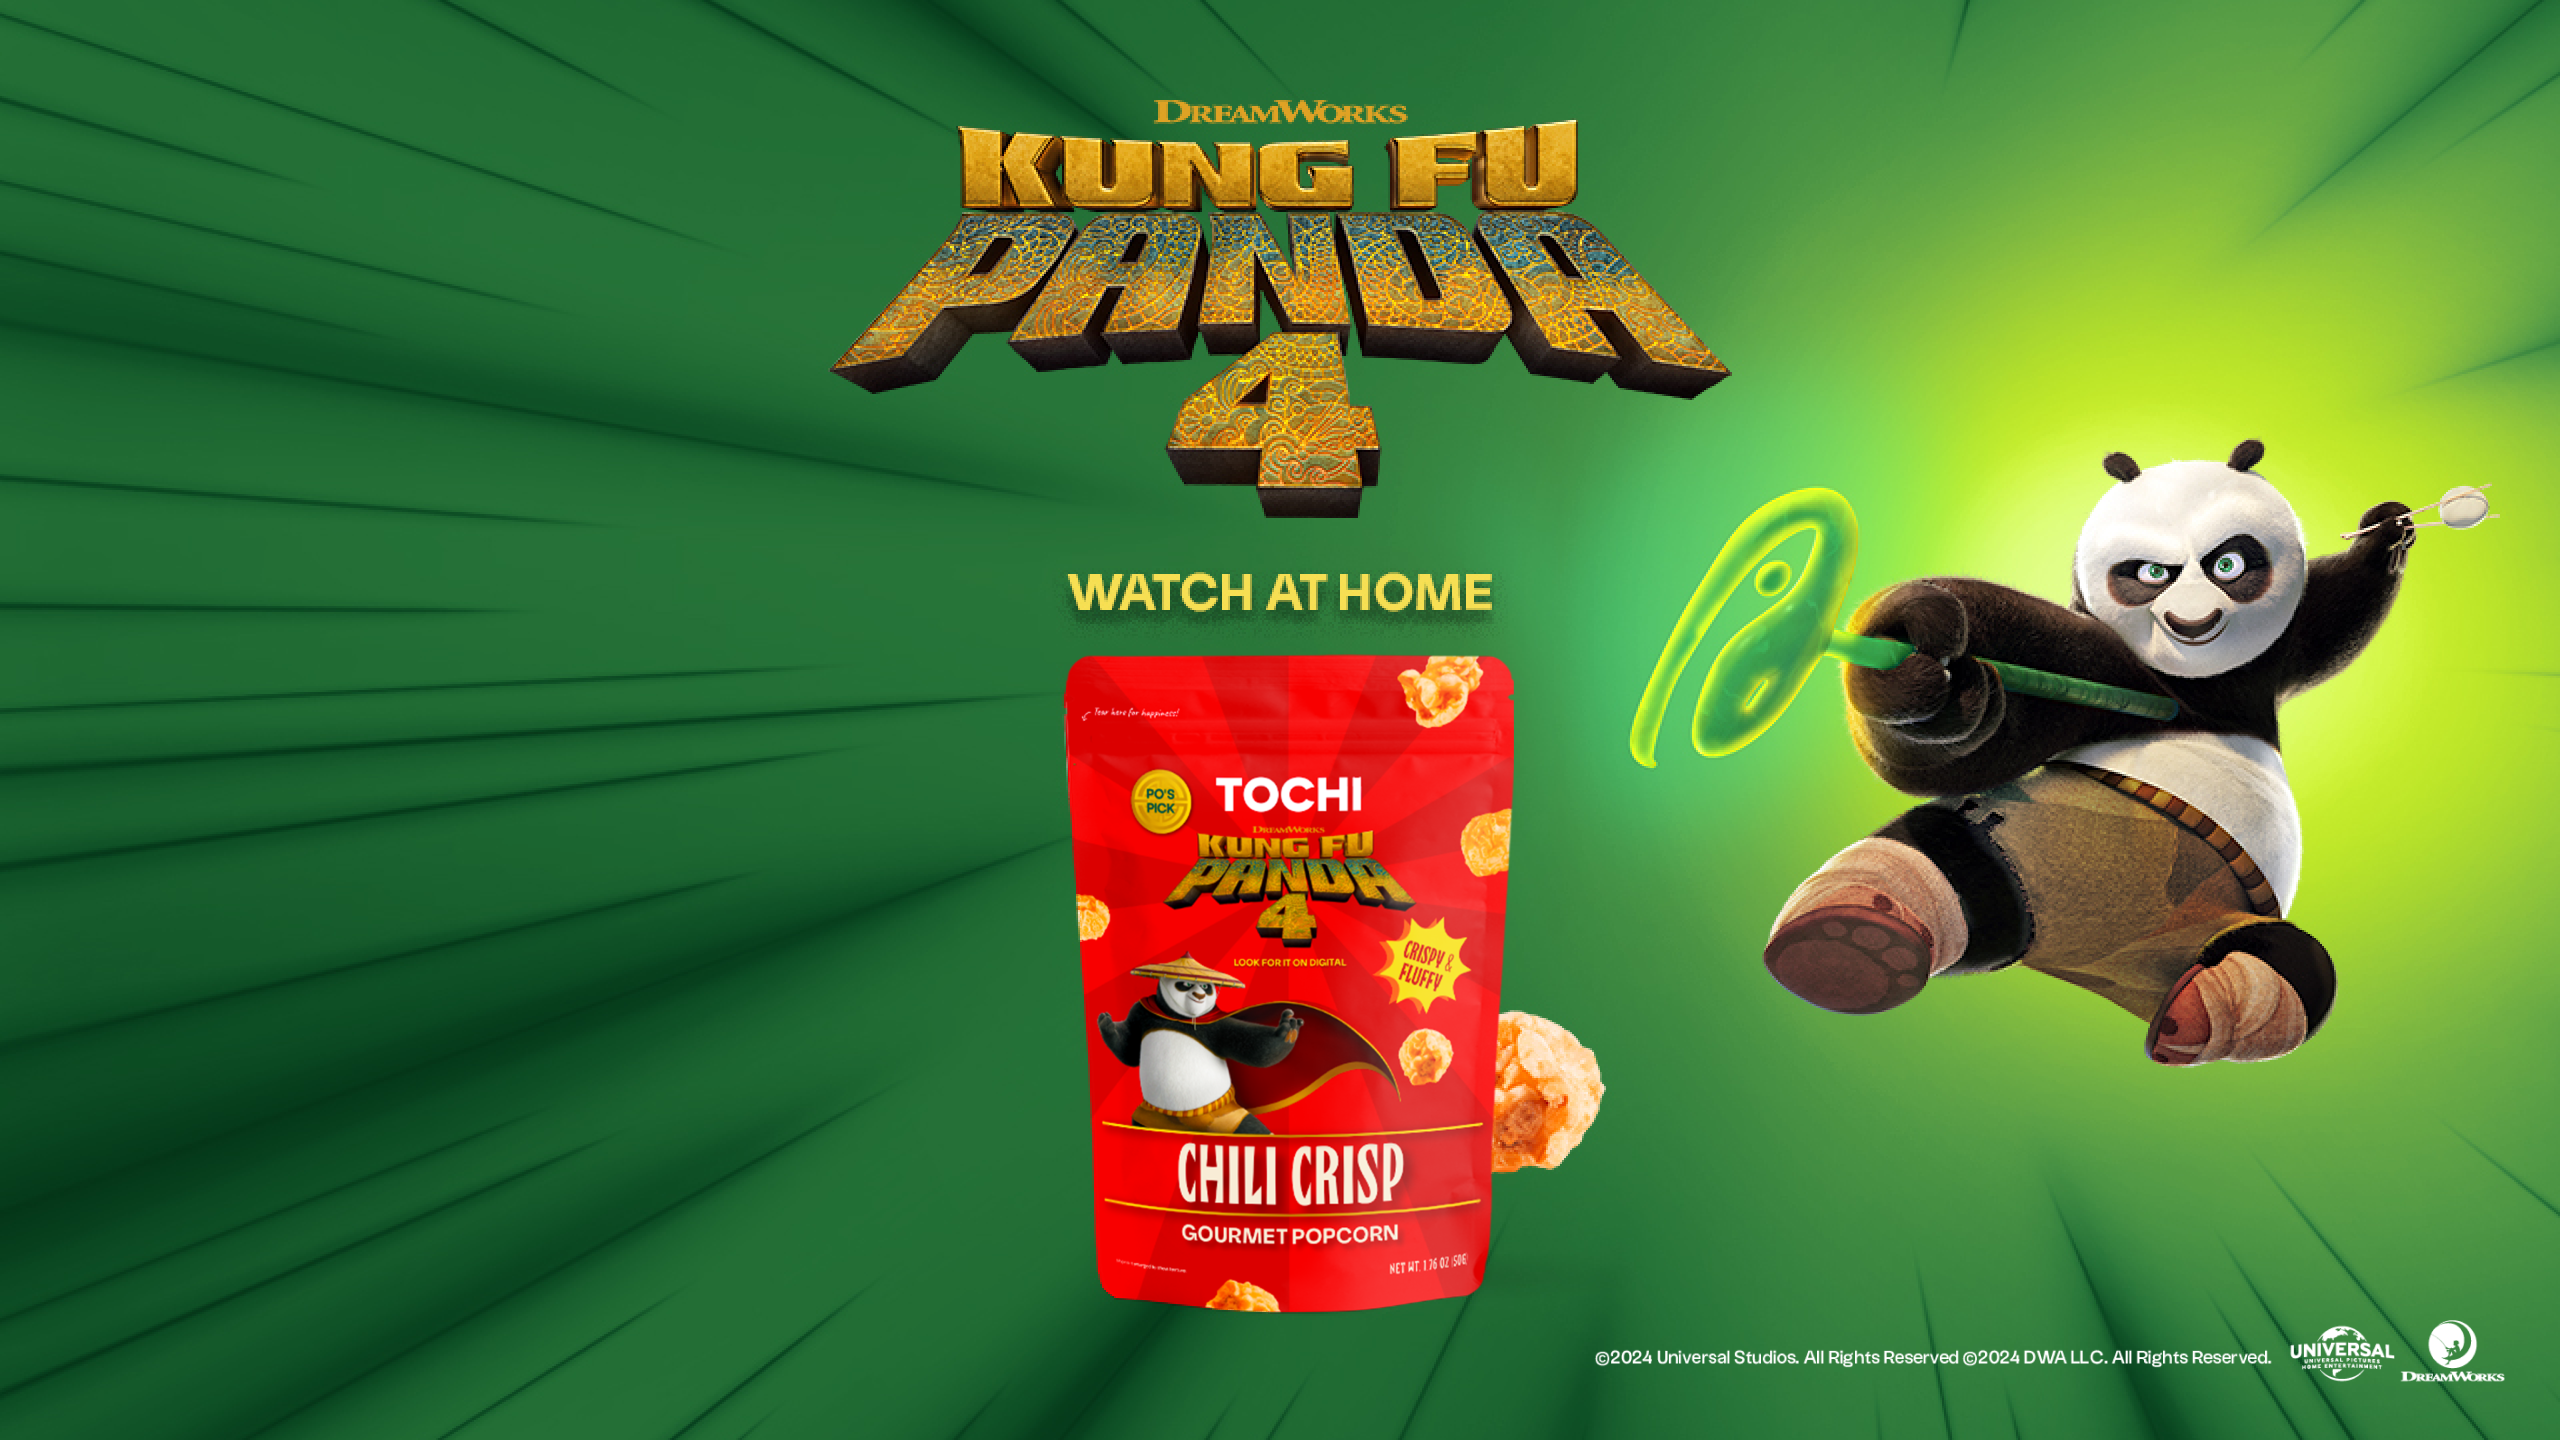 Tochi Chili Crisp kung fu panda gourmet popcorn